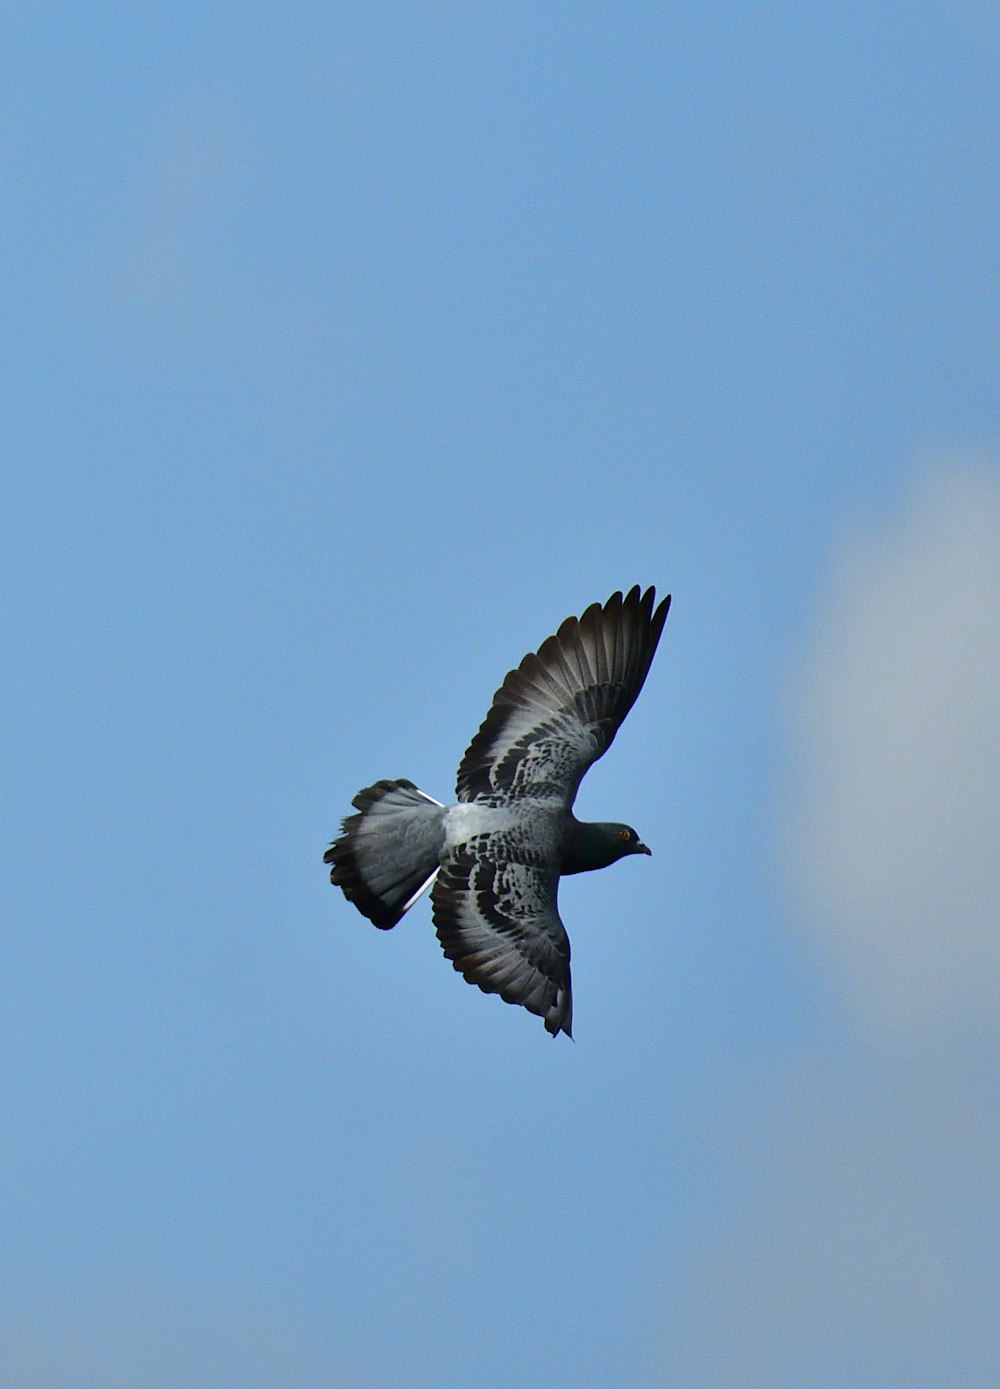 black billed gull flying during daytime